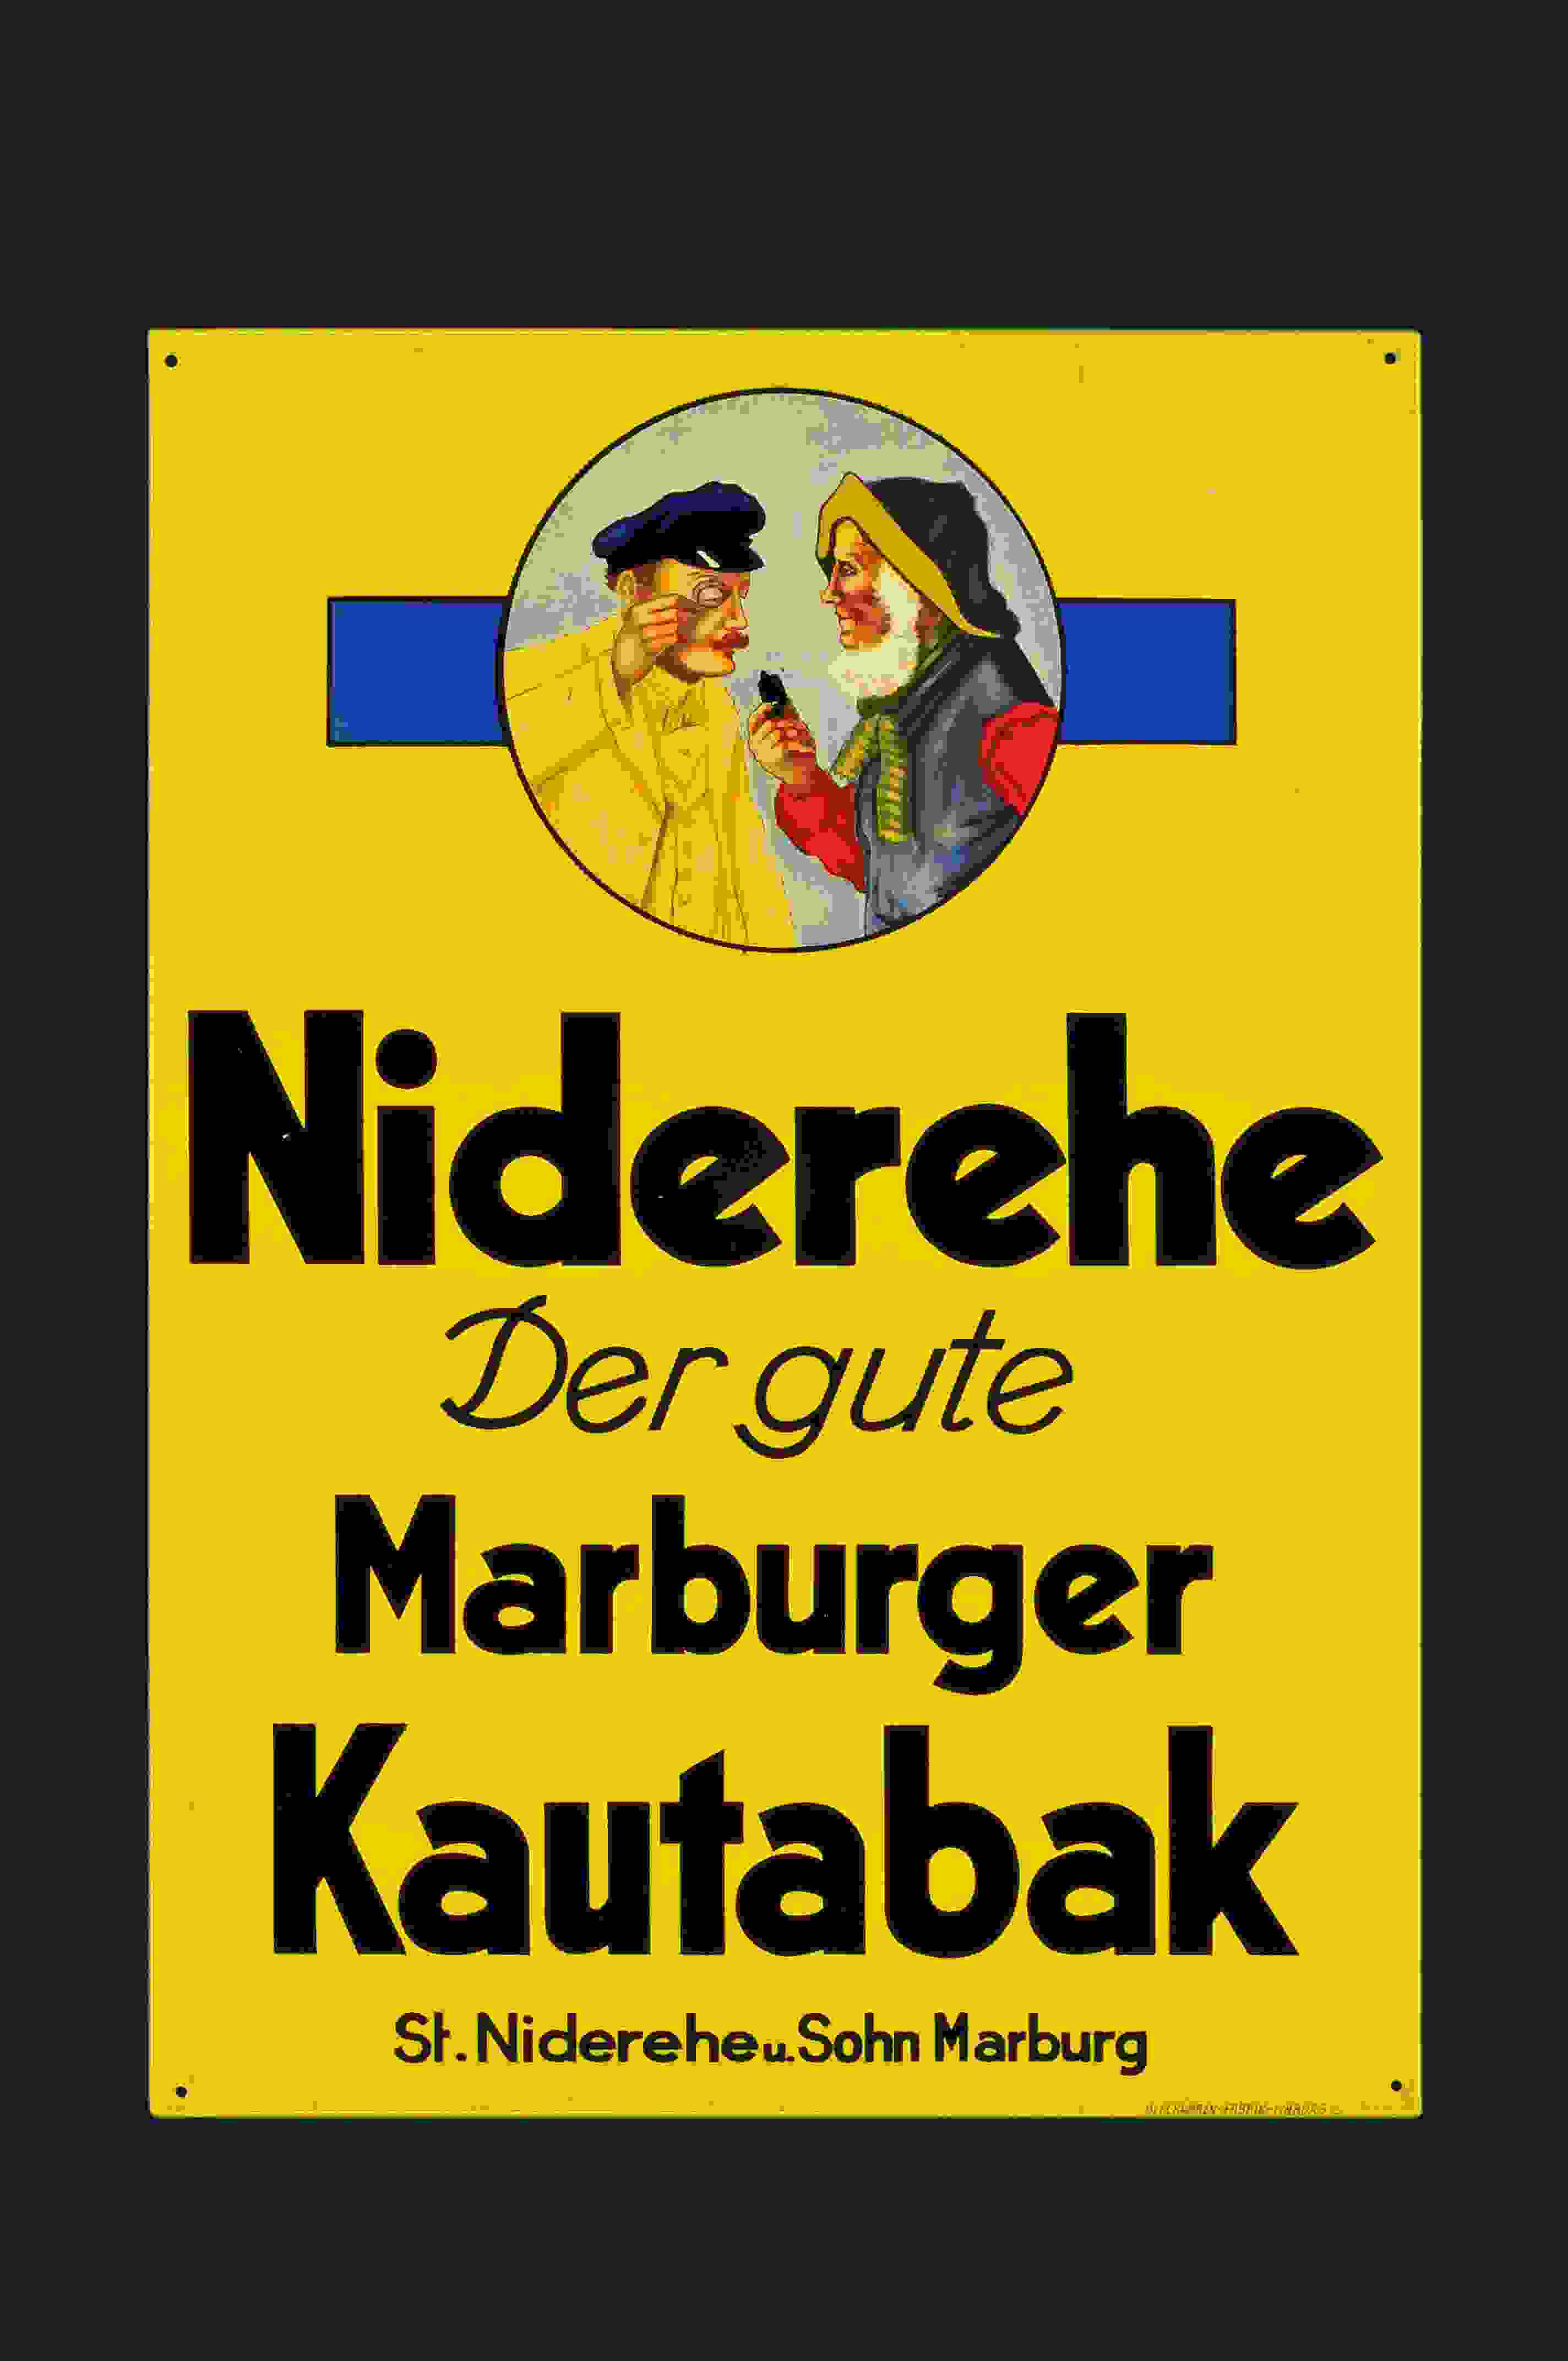 Niderehe Marburger Kautabak 